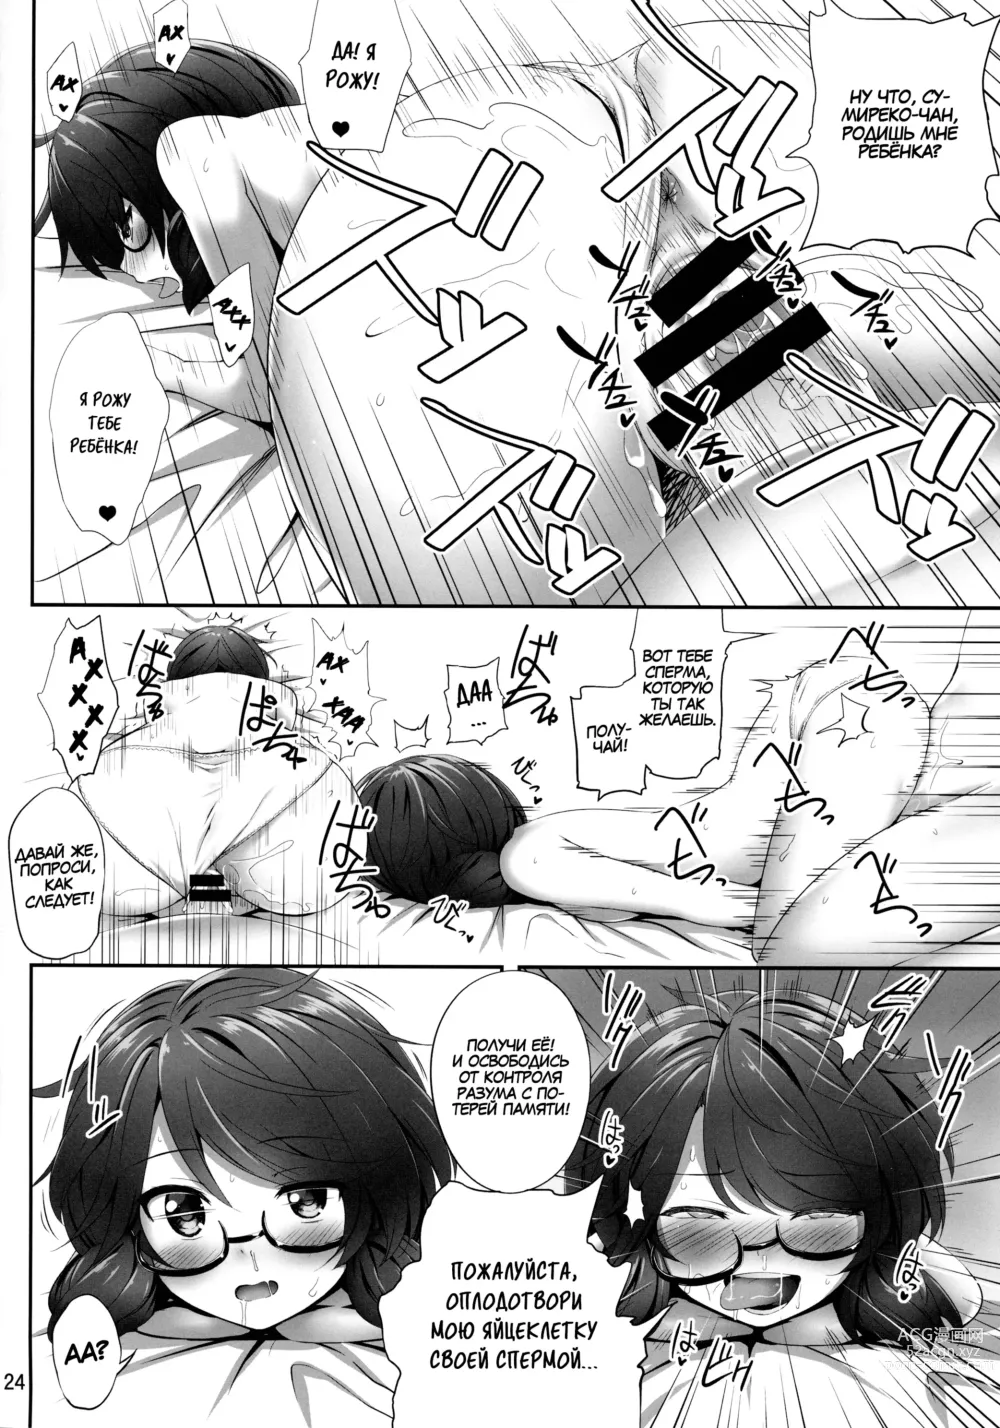 Page 23 of doujinshi Usami Sumireko Saiminbon